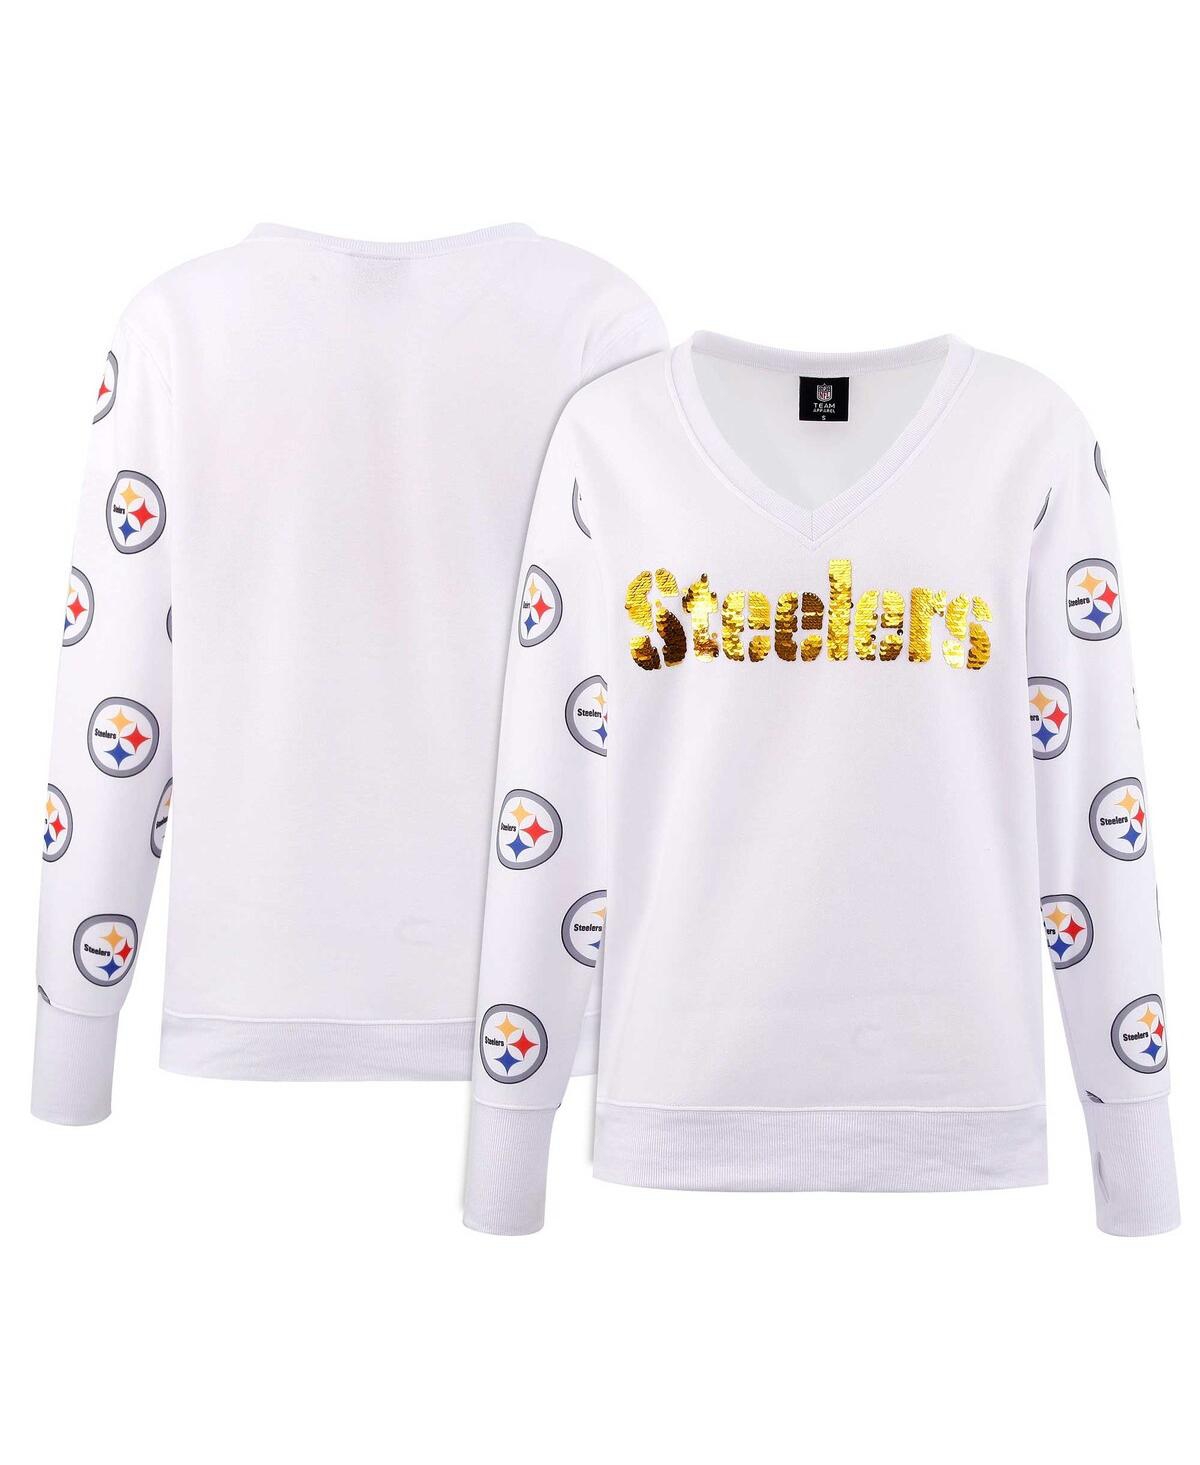 Women's Cuce White Pittsburgh Steelers Sequin Fleece V-Neck T-shirt - White